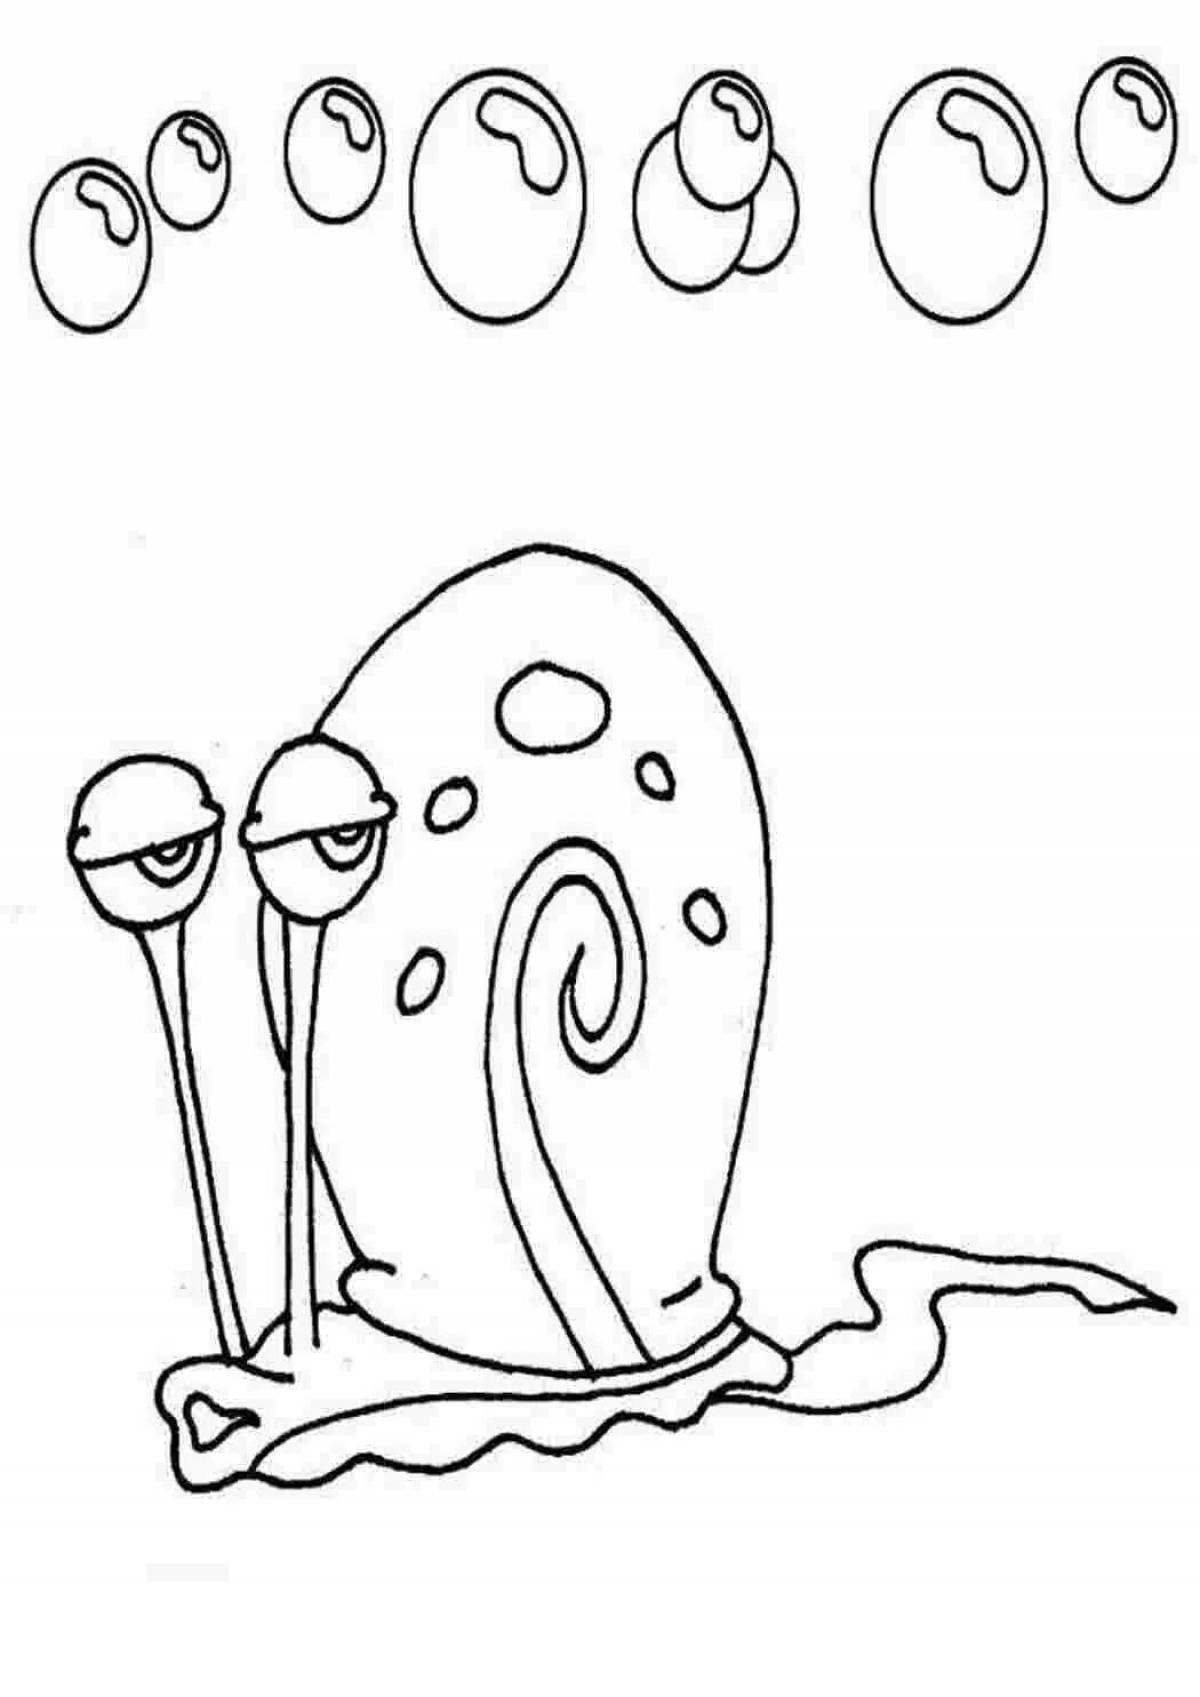 Happy gary the snail